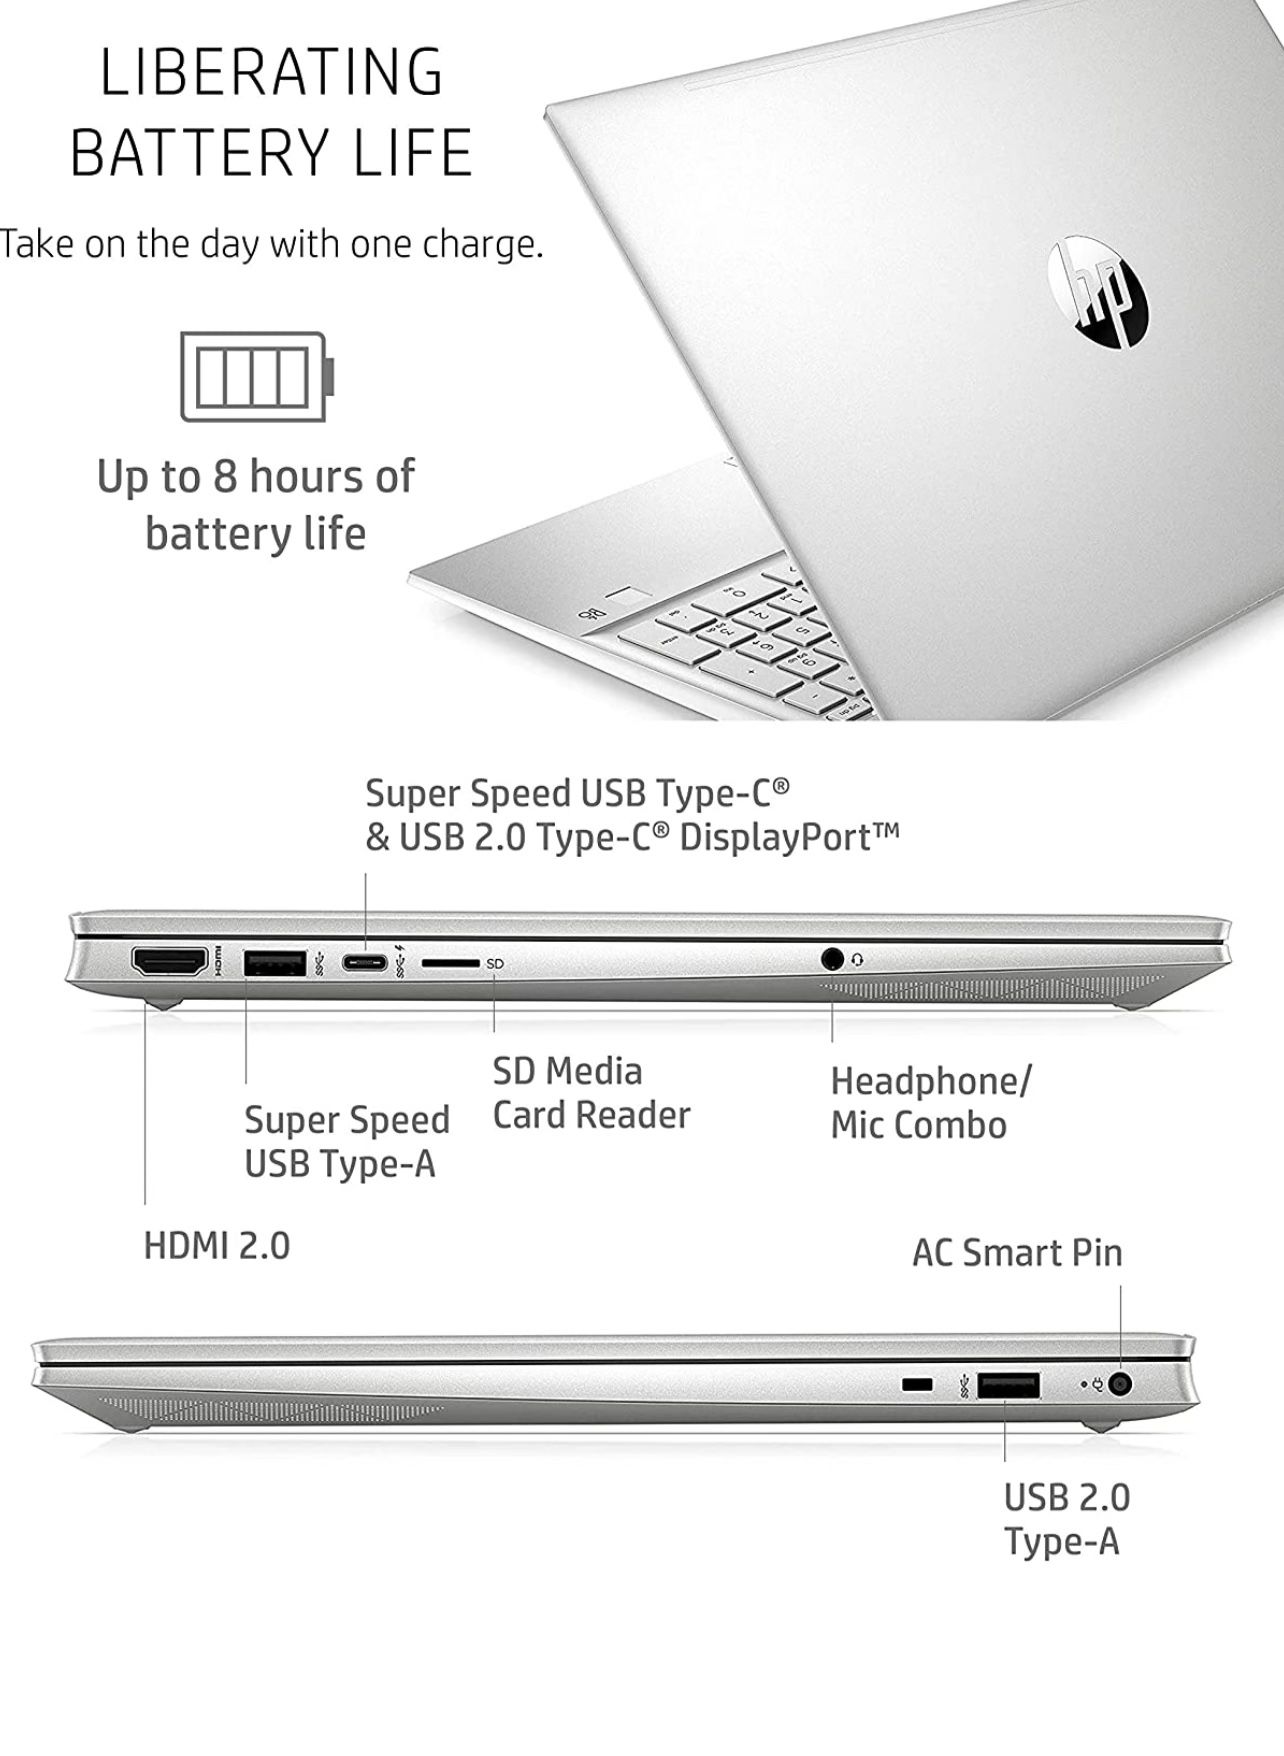 HP Pavilion 15 Laptop 11 Gen Intel Core i7 